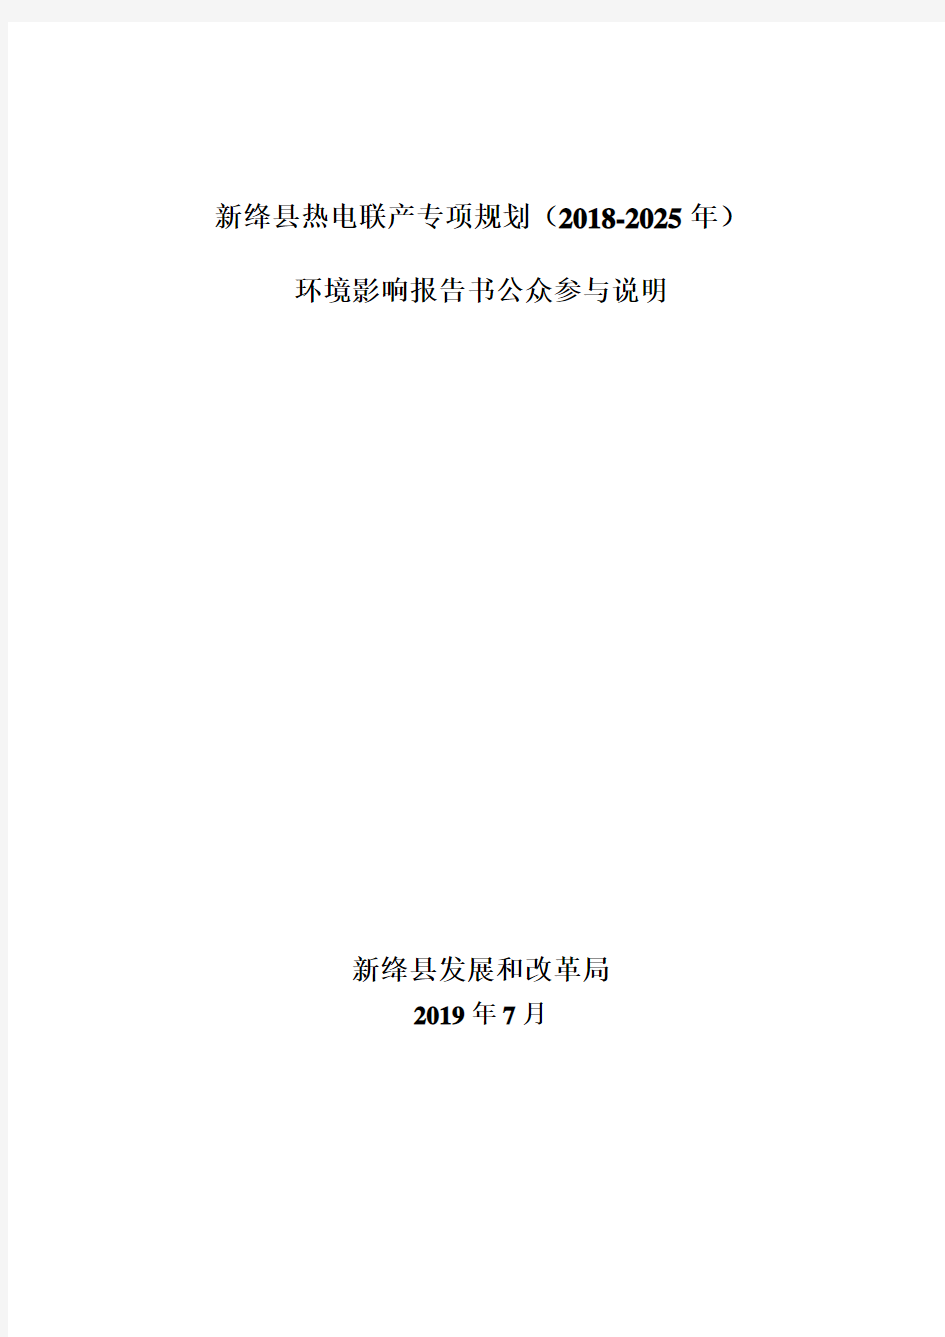 新绛县热电联产专项规划(2018-2025年)